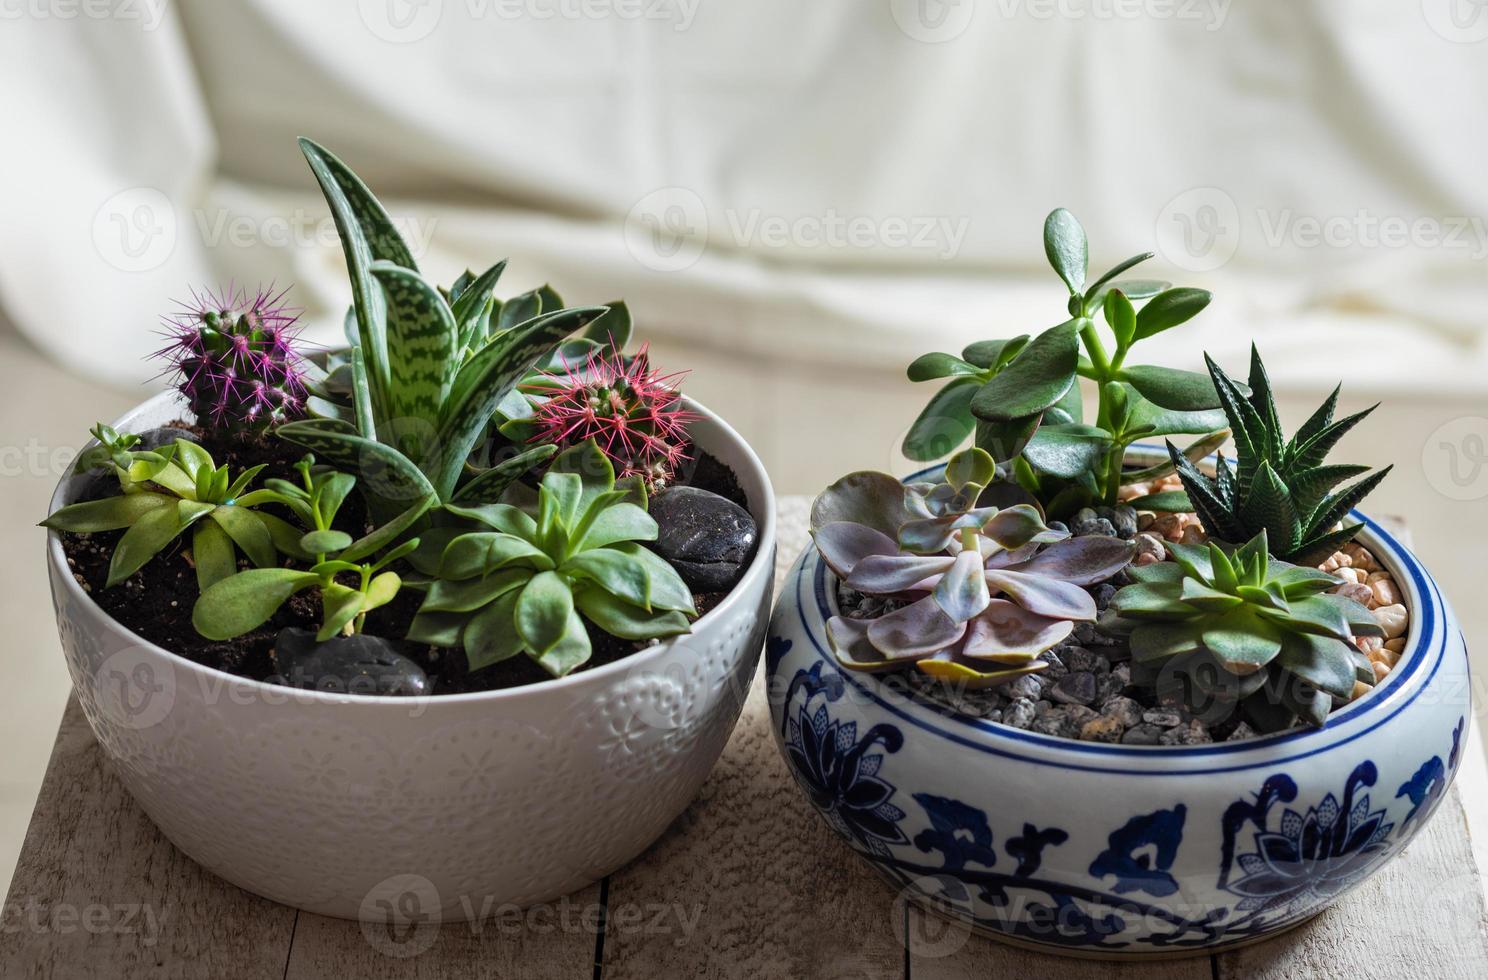 Terrarium plants in pot with cactus succulent close up photo